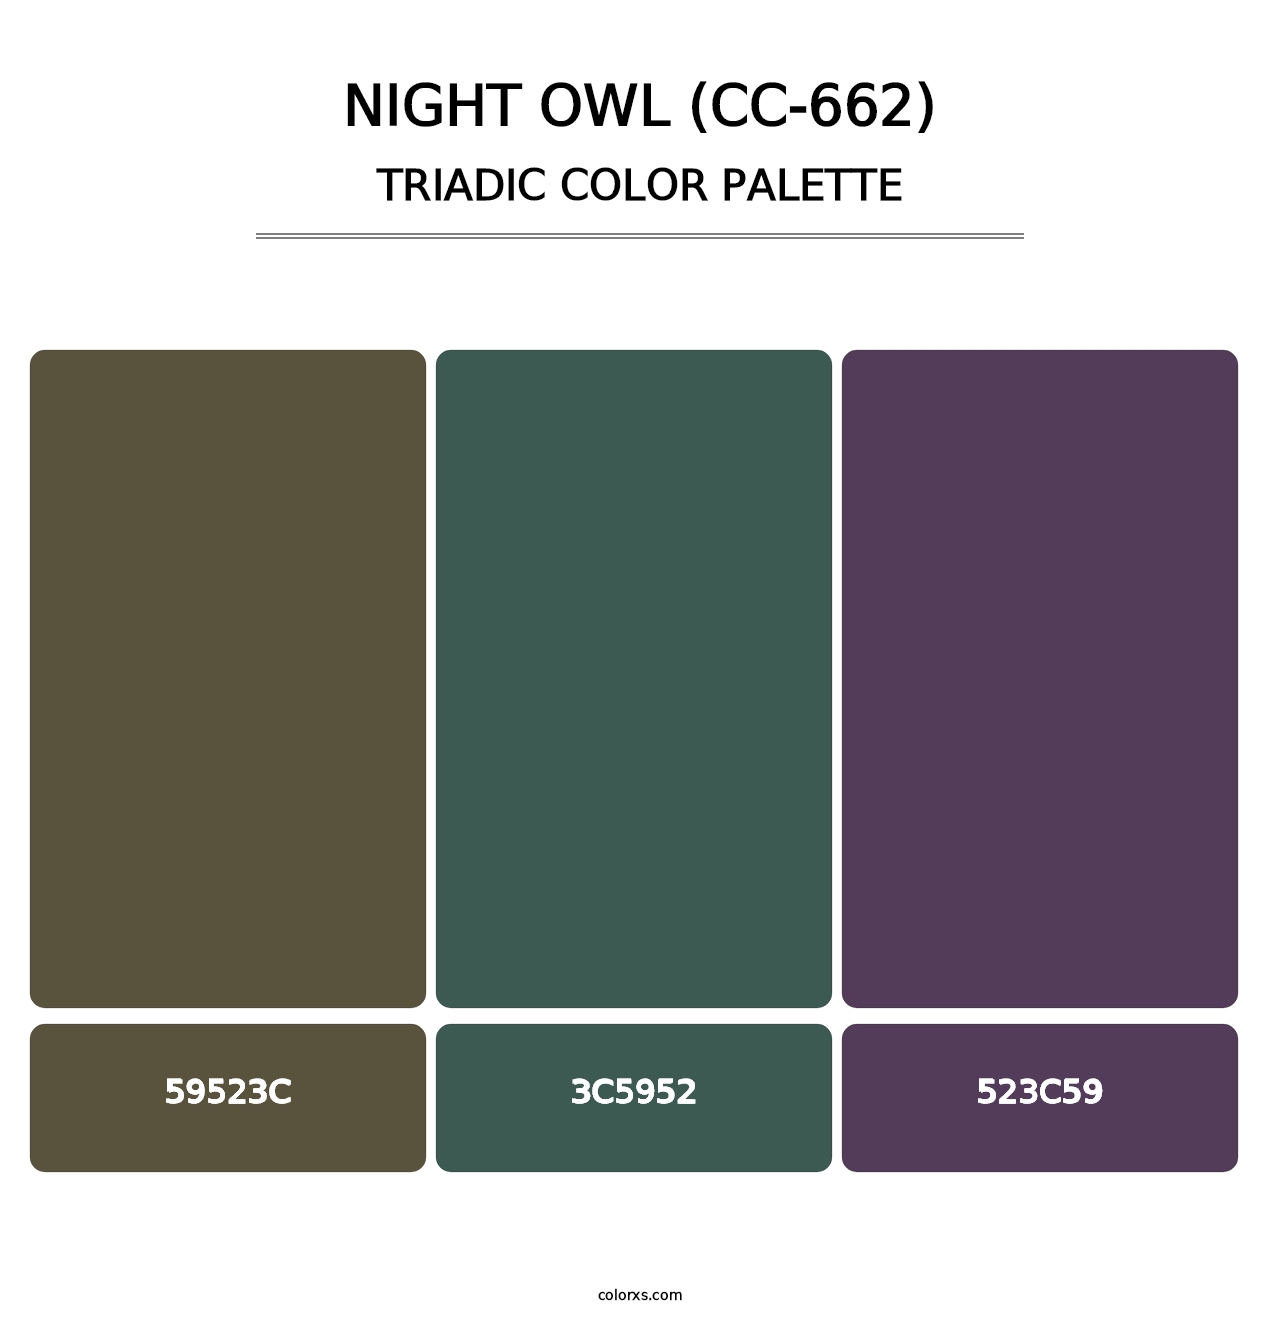 Night Owl (CC-662) - Triadic Color Palette